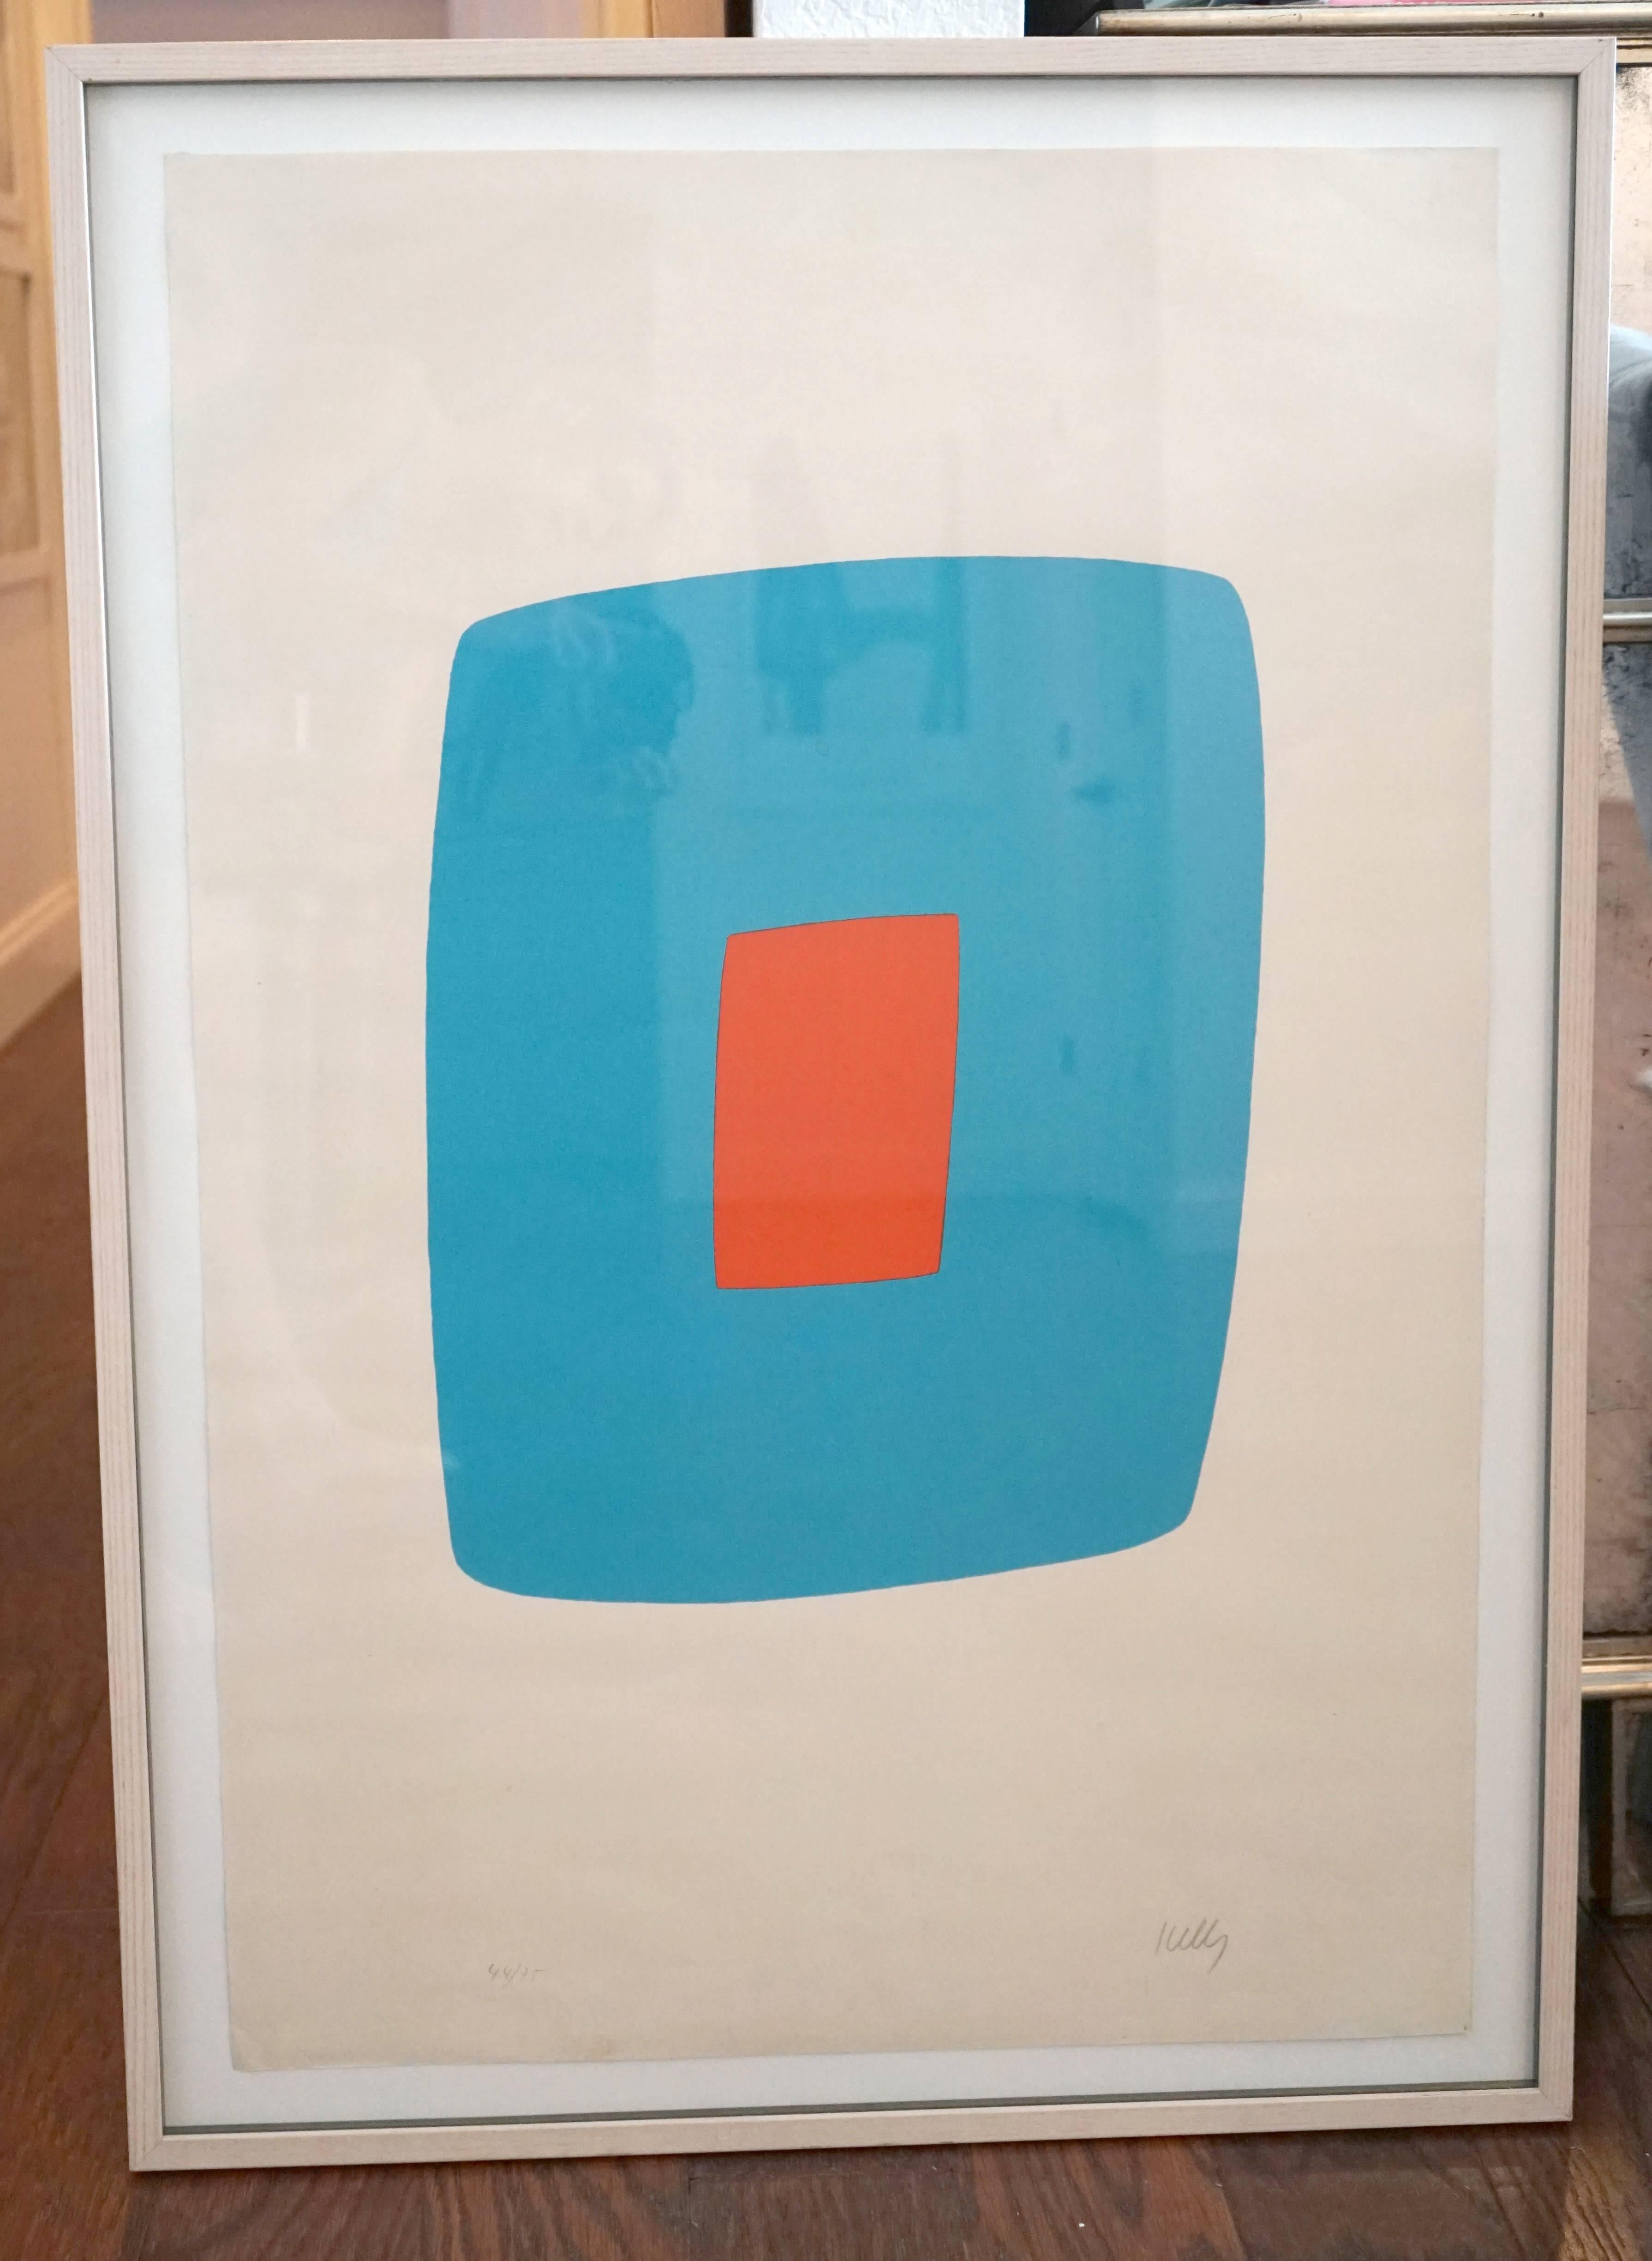 Künstler: Ellsworth Kelly
Titel: Hellblau mit Orange (Bleu clair avec orange) aus der Suite von siebenundzwanzig Farblithographien
Eine aus einer Serie von siebenundzwanzig Lithographien
Jahr: 1964-1965
Medium: Lithographie auf Rives-Papier
Signiert